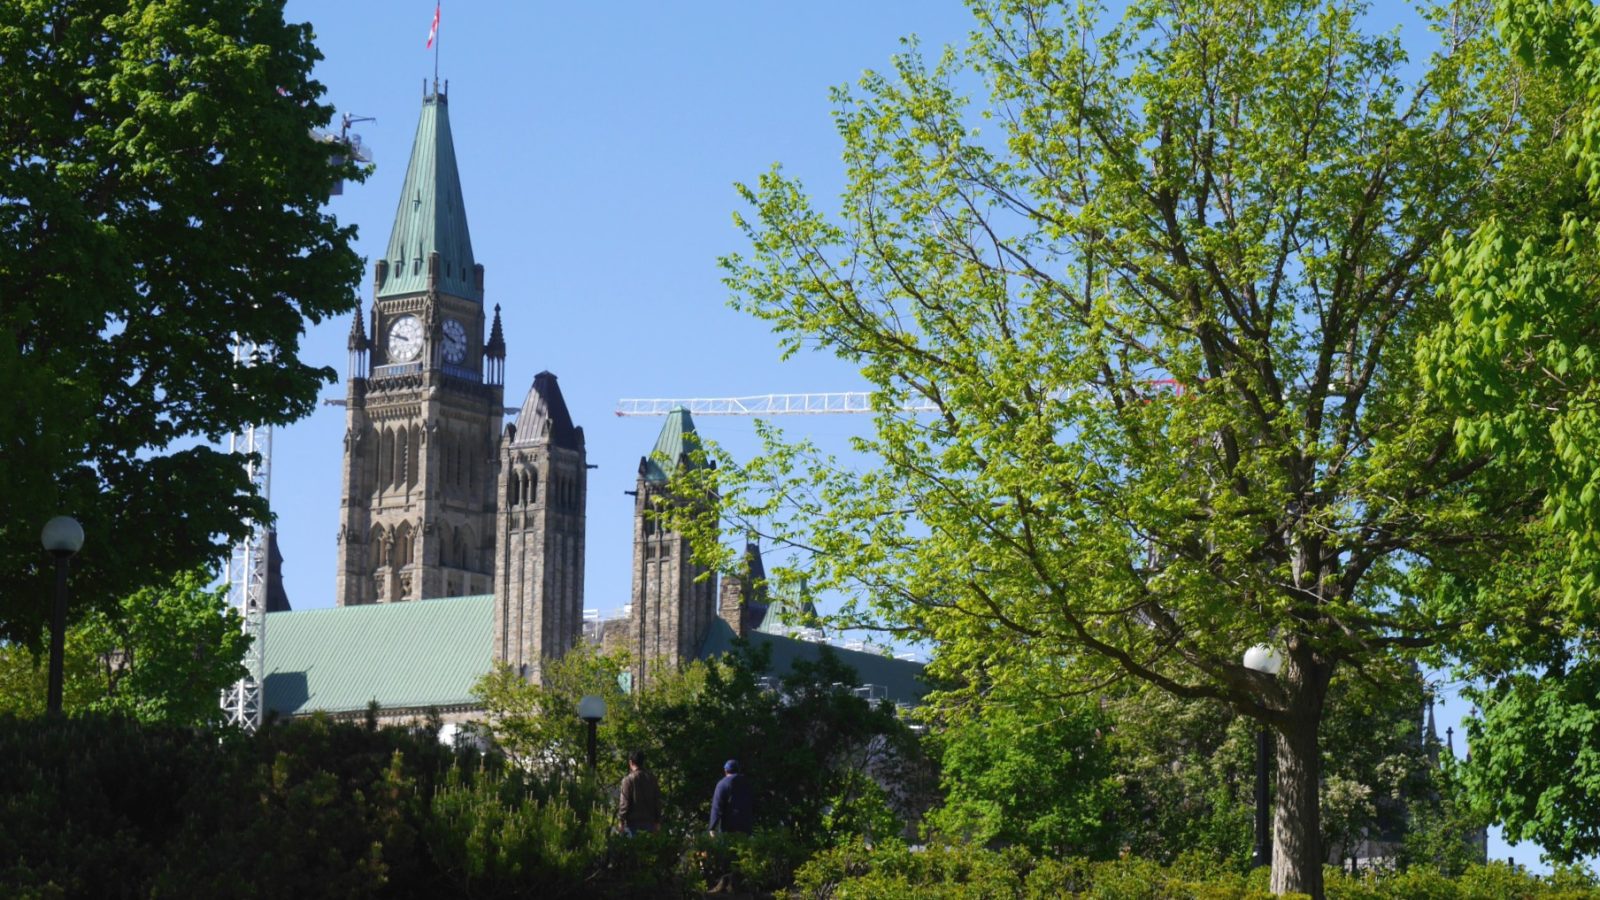 Parliamet Hill es sin duda la atracción más importante que ver en Ottawa